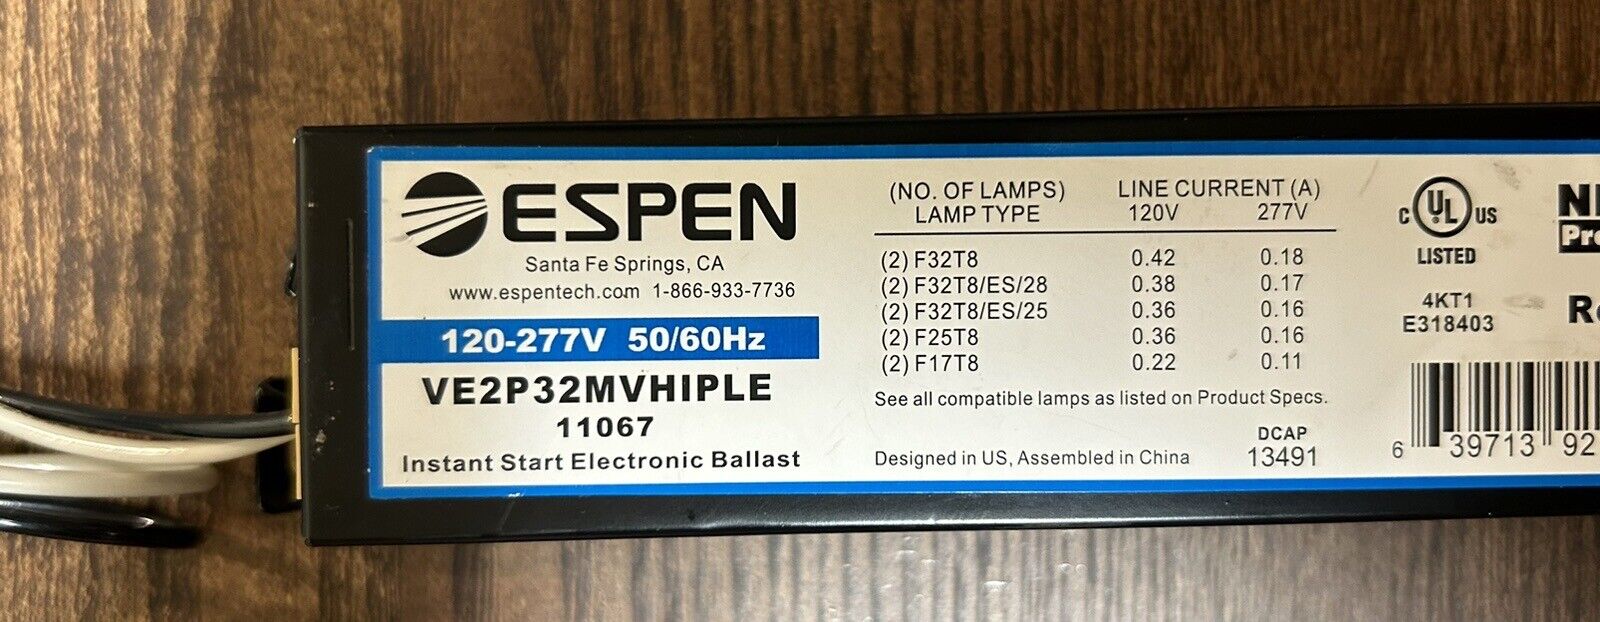 ESPEN VE2P32MVHIPLE Instant Start Electronic Ballast 2 Lamp 120-277V